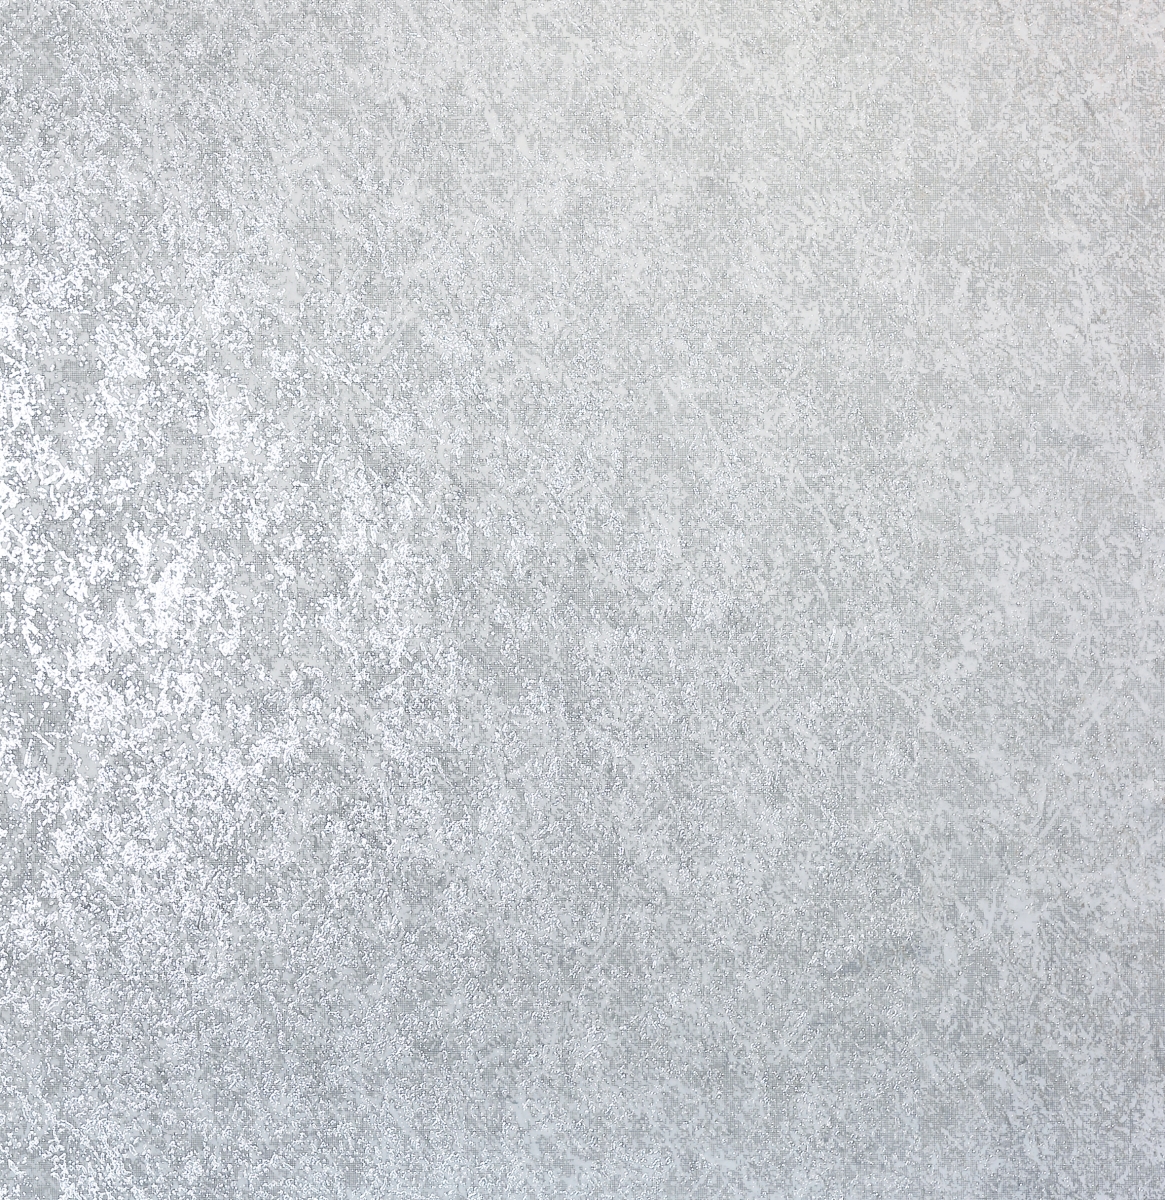 903206 Texture Kiss Foil Non-woven Wallpaper, Silver